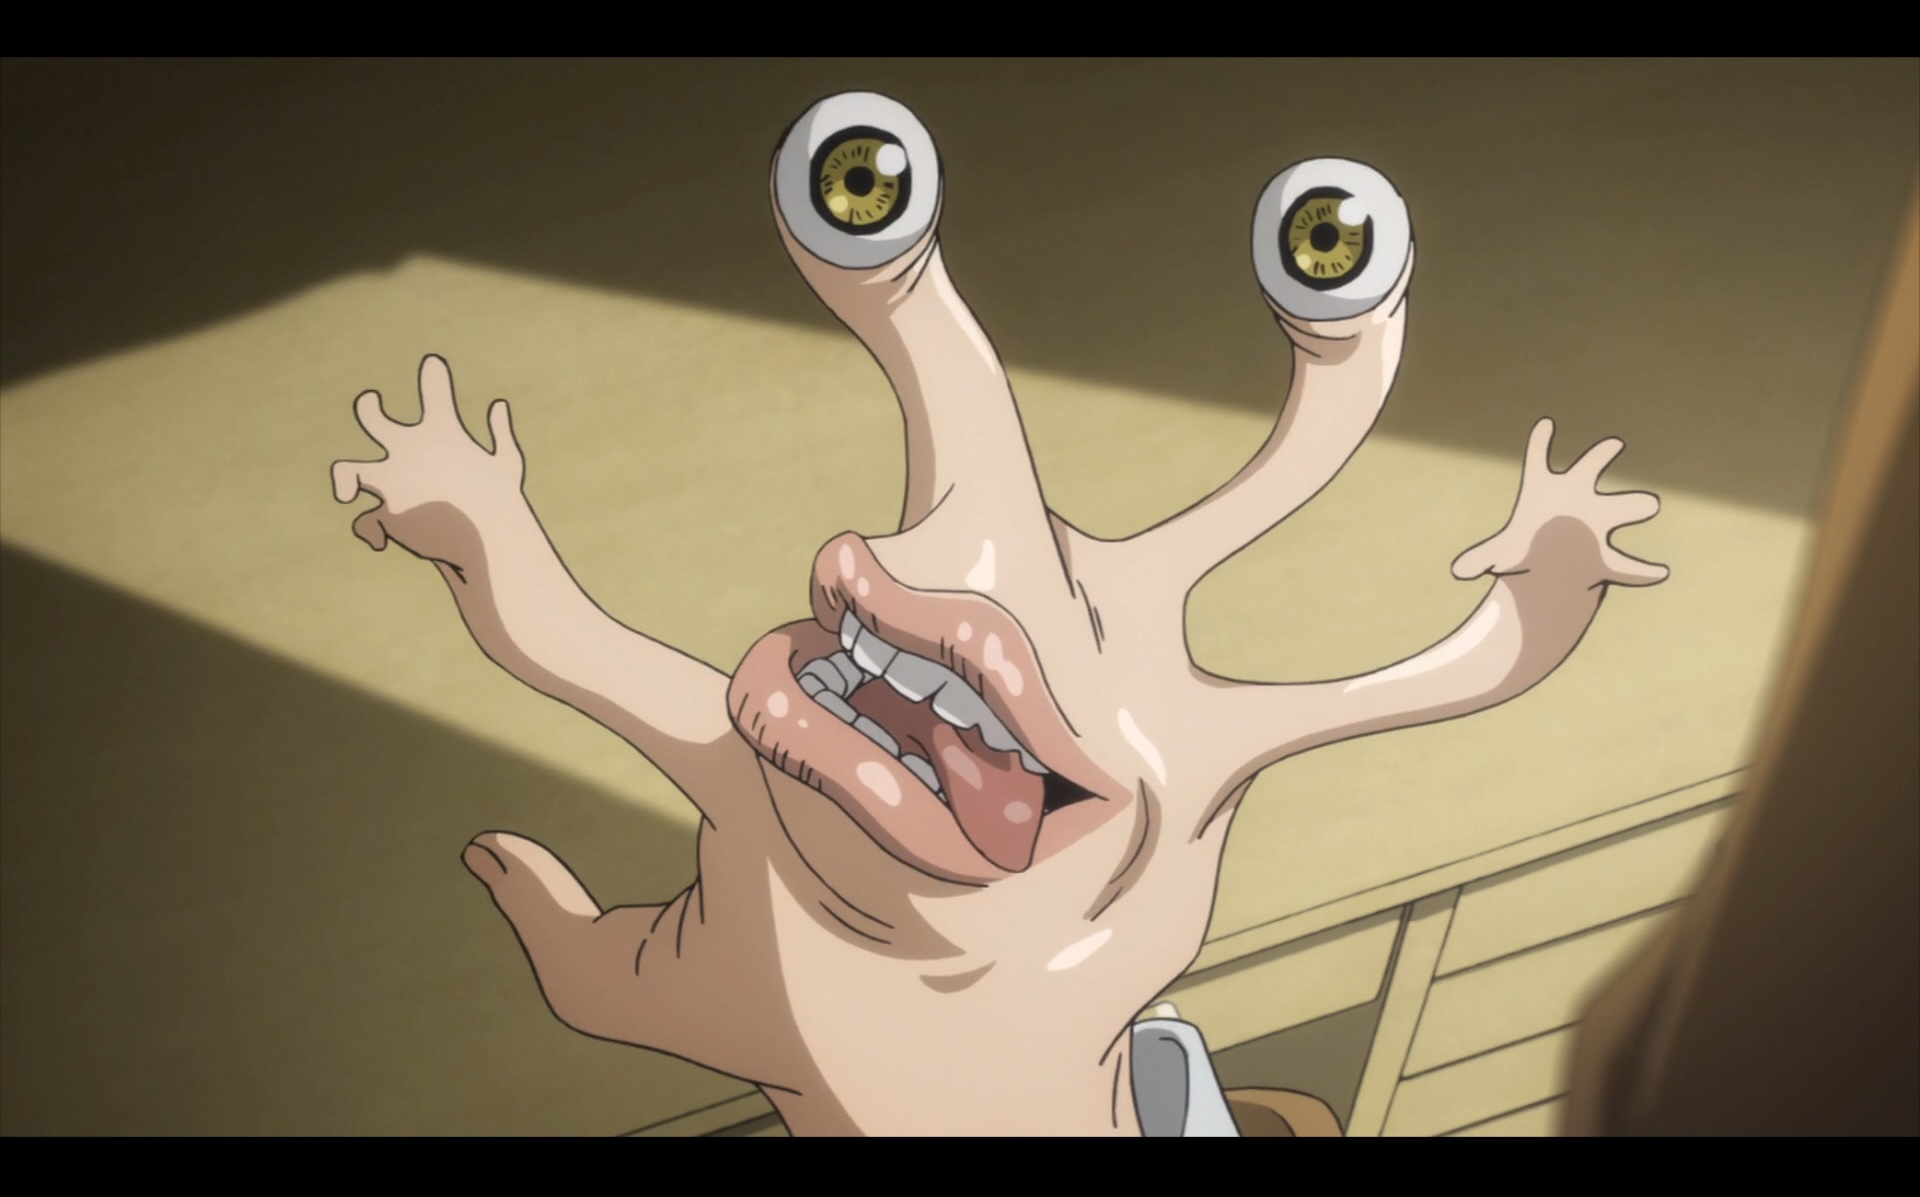 Migi, ein parasitäres außerirdisches Monster, hat Shinichis rechte Hand in einer Szene aus dem TV-Anime „Parasyte – the maxim“ absorbiert und vollständig transformiert.